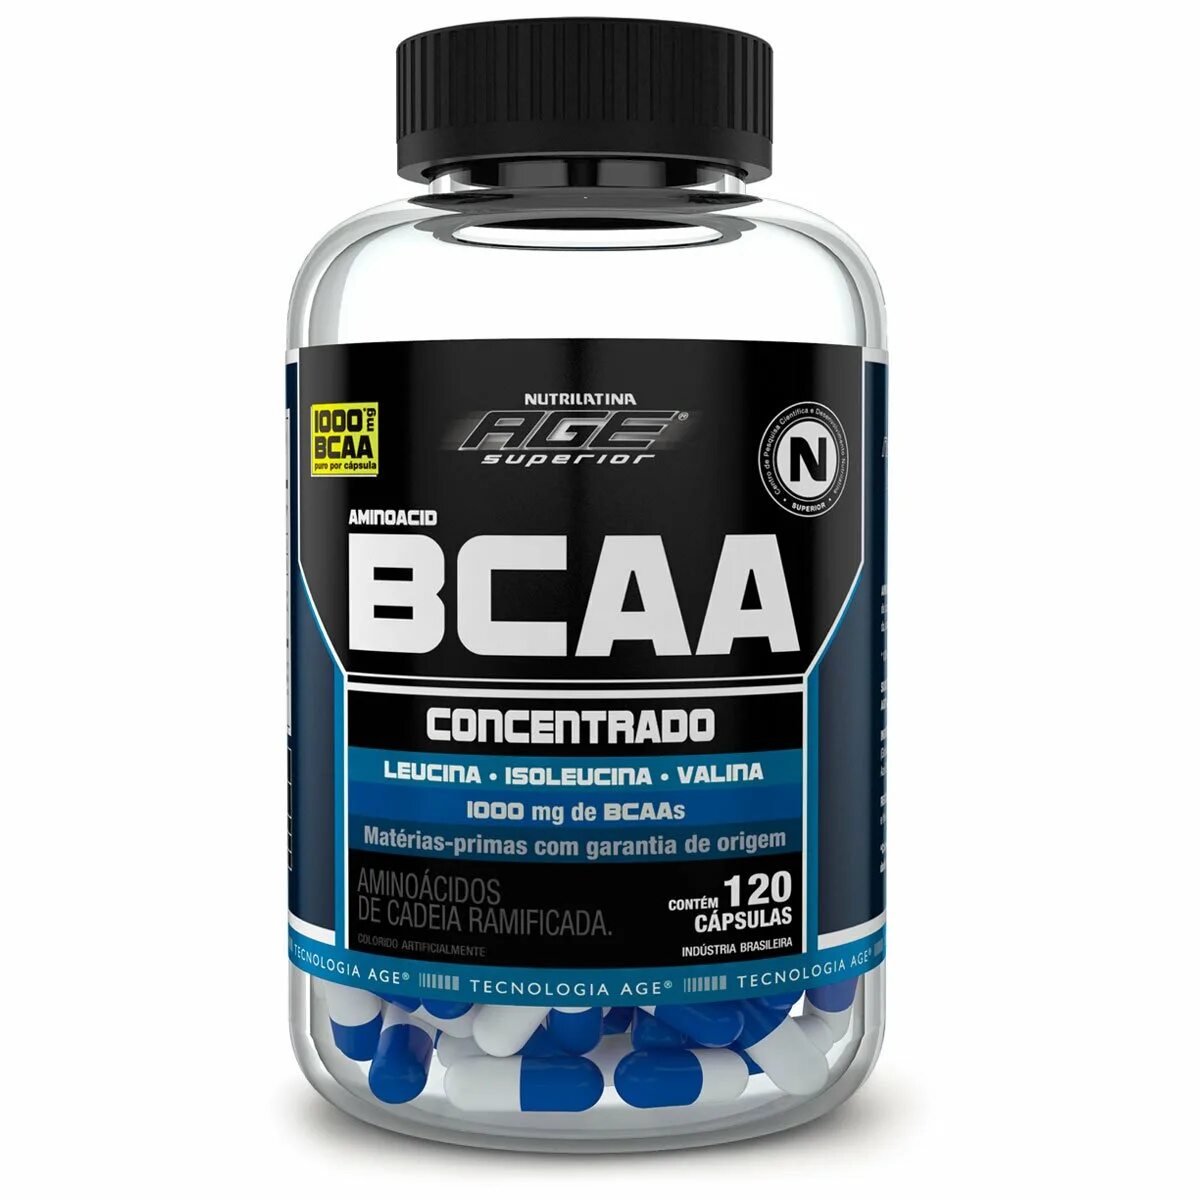 Бца что это такое в медицине. БЦАА 5000 Optimum Series. BCAA. BCAA фирмы. Витамины бца для спортсменов.